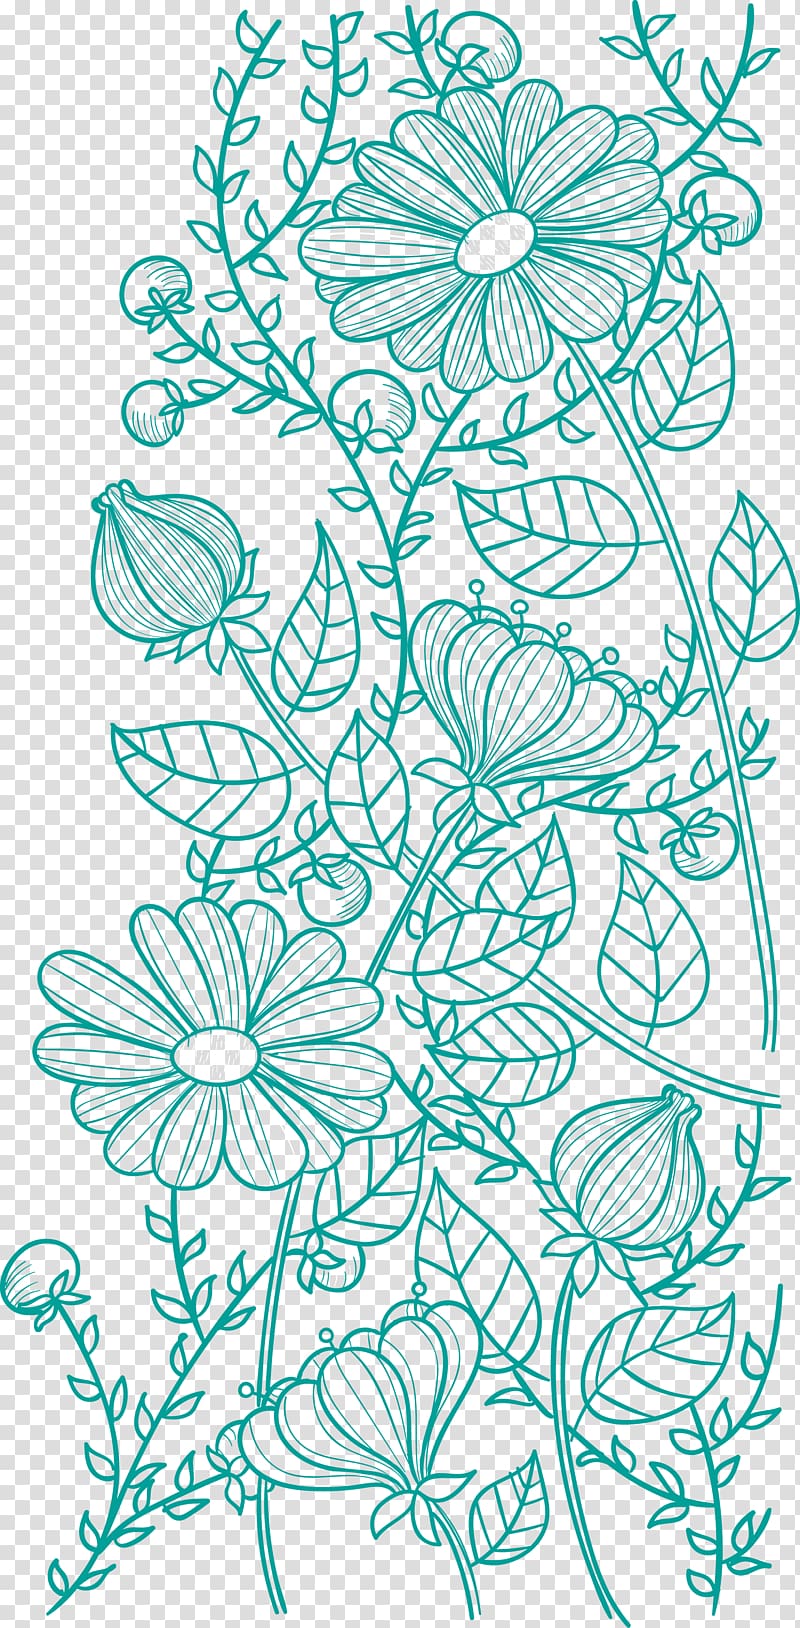 teal flower sketch illustration, Flower Pattern, Flower pattern transparent background PNG clipart